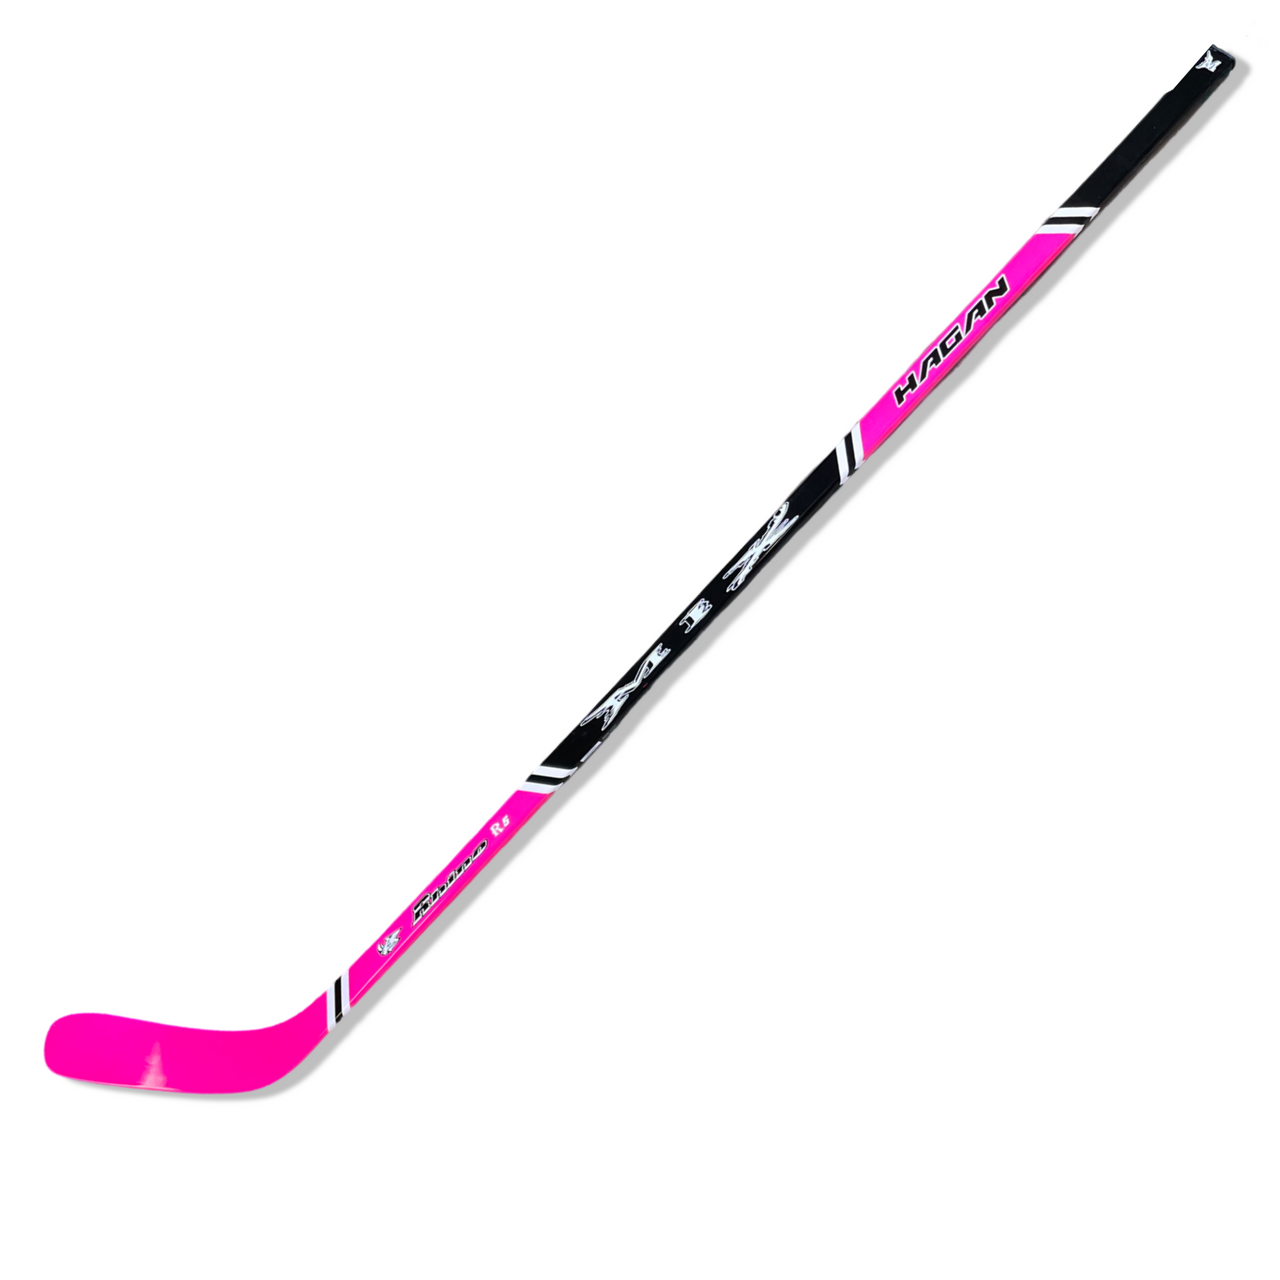 MIX Rhino (R9) Ice Hockey Stick - (Senior)